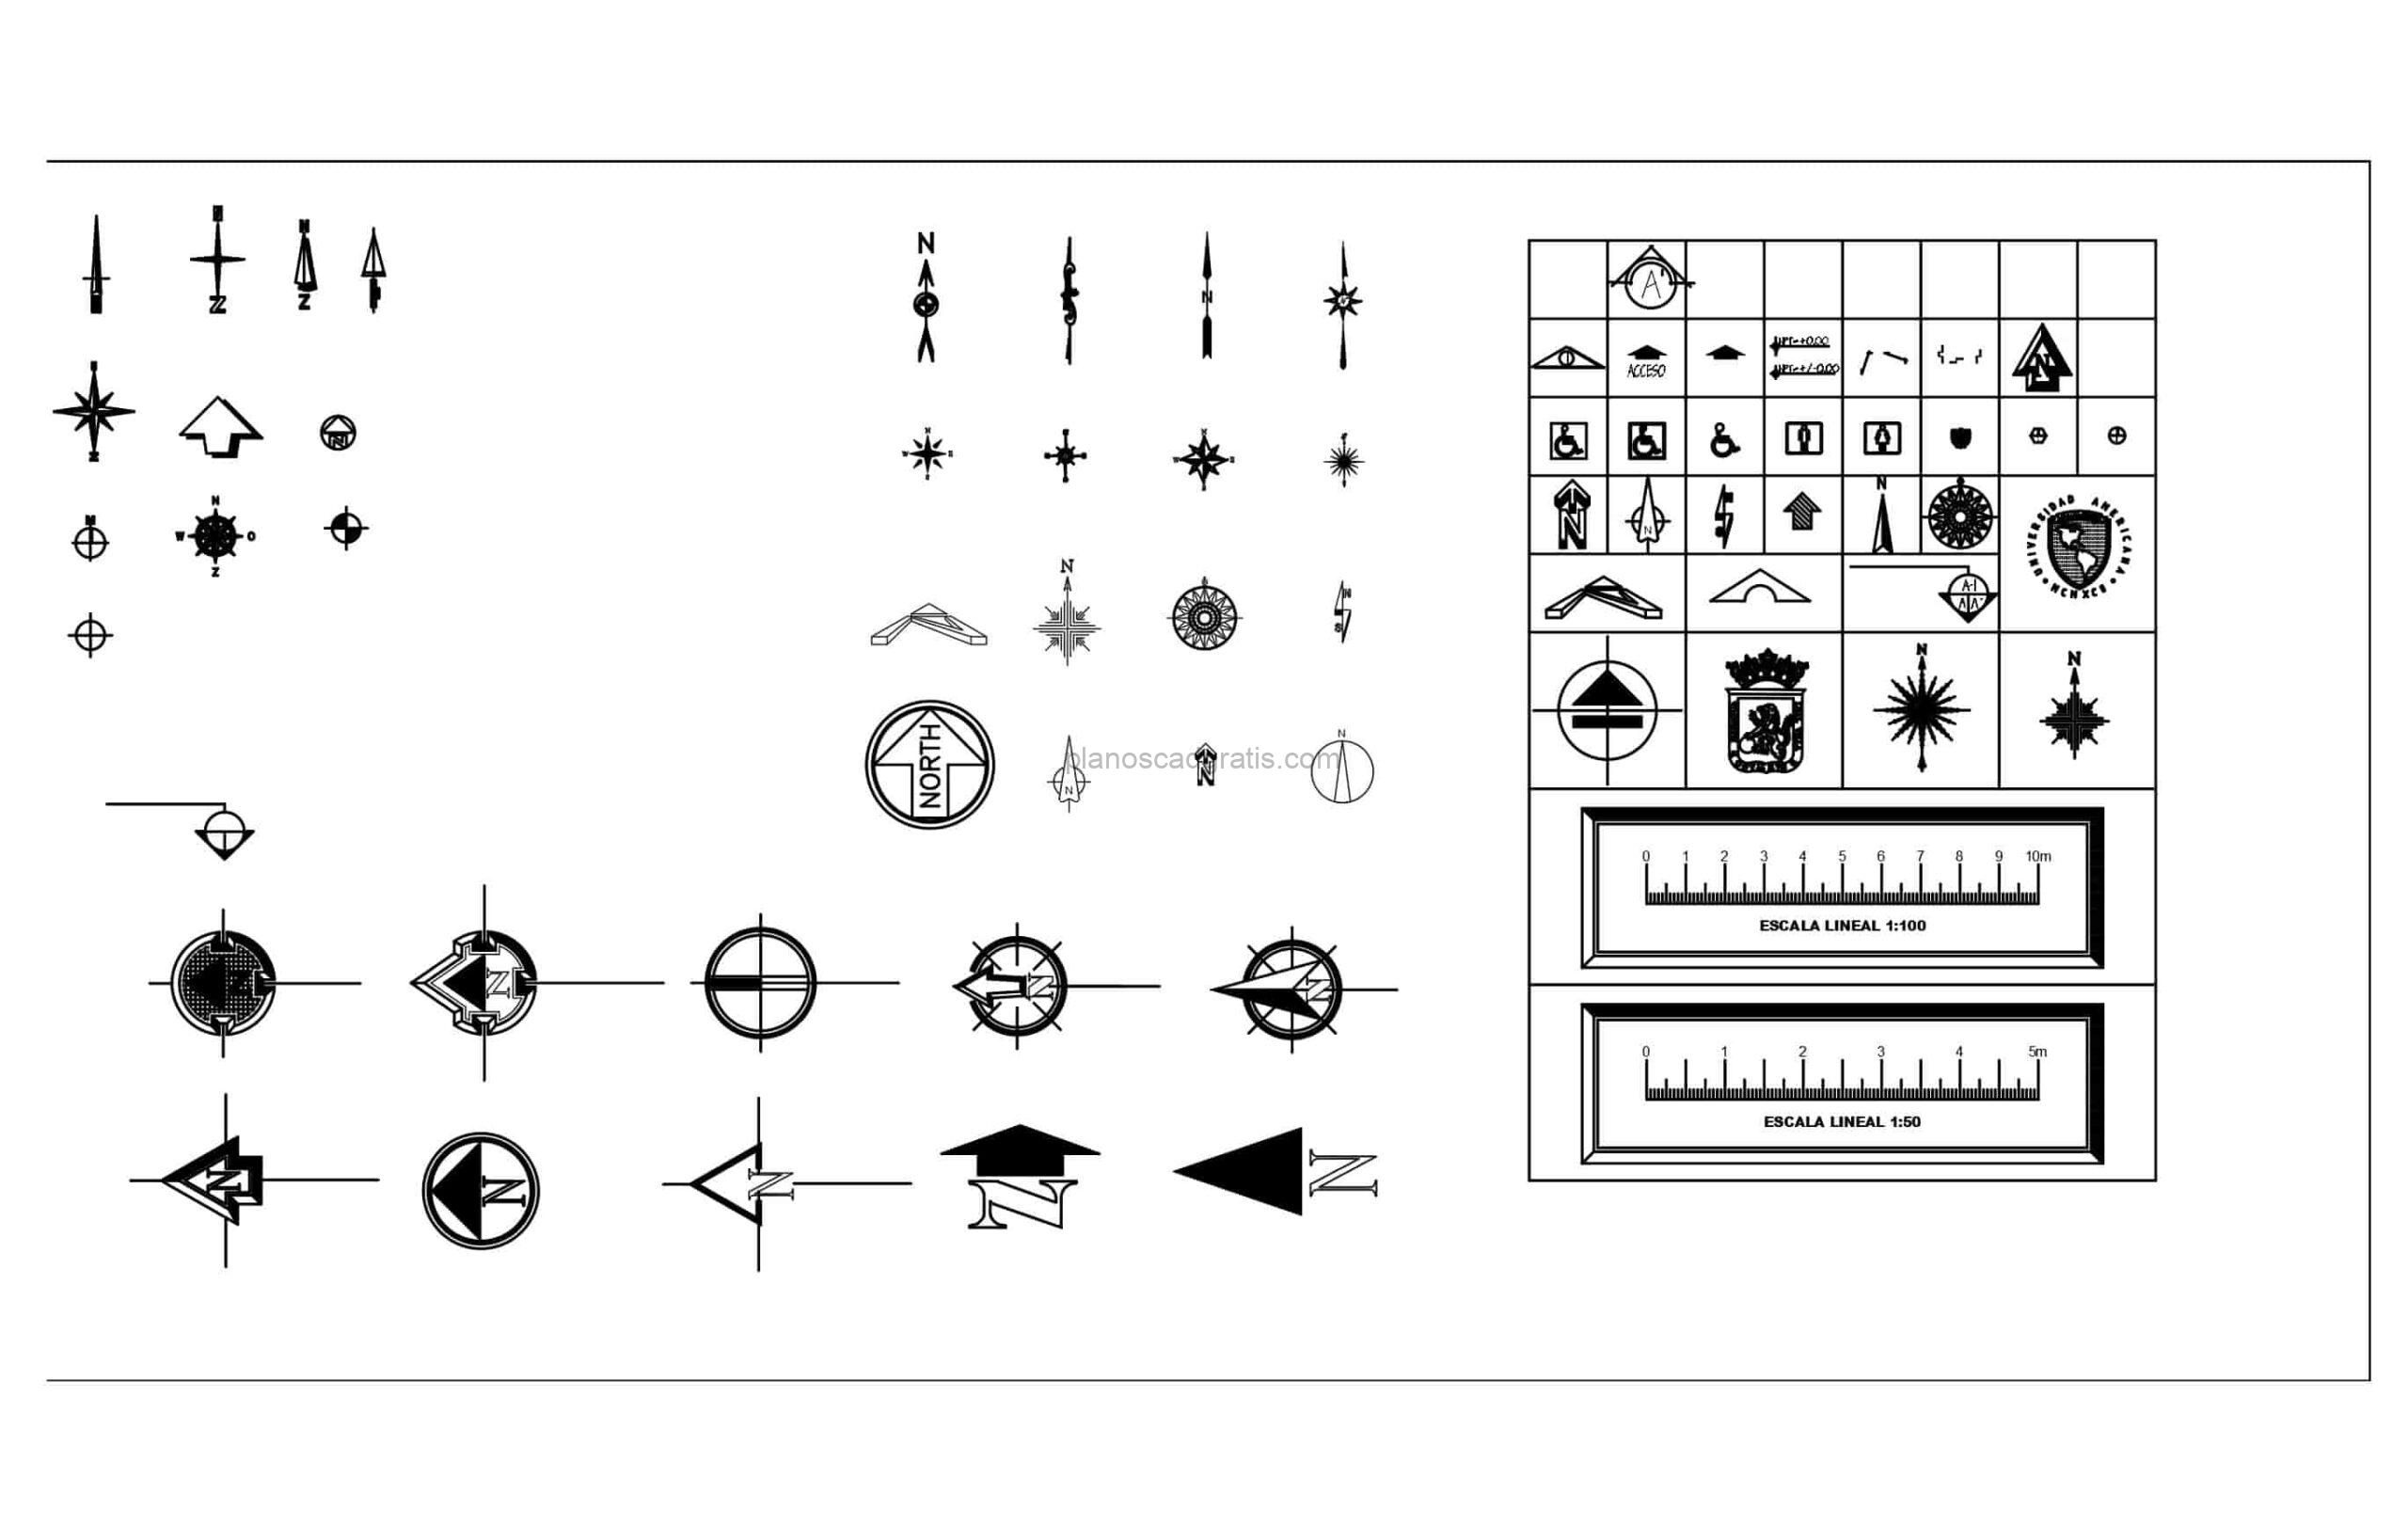 plano en formato dwg de autocad de simbolos norte, dibujo para descarga gratis